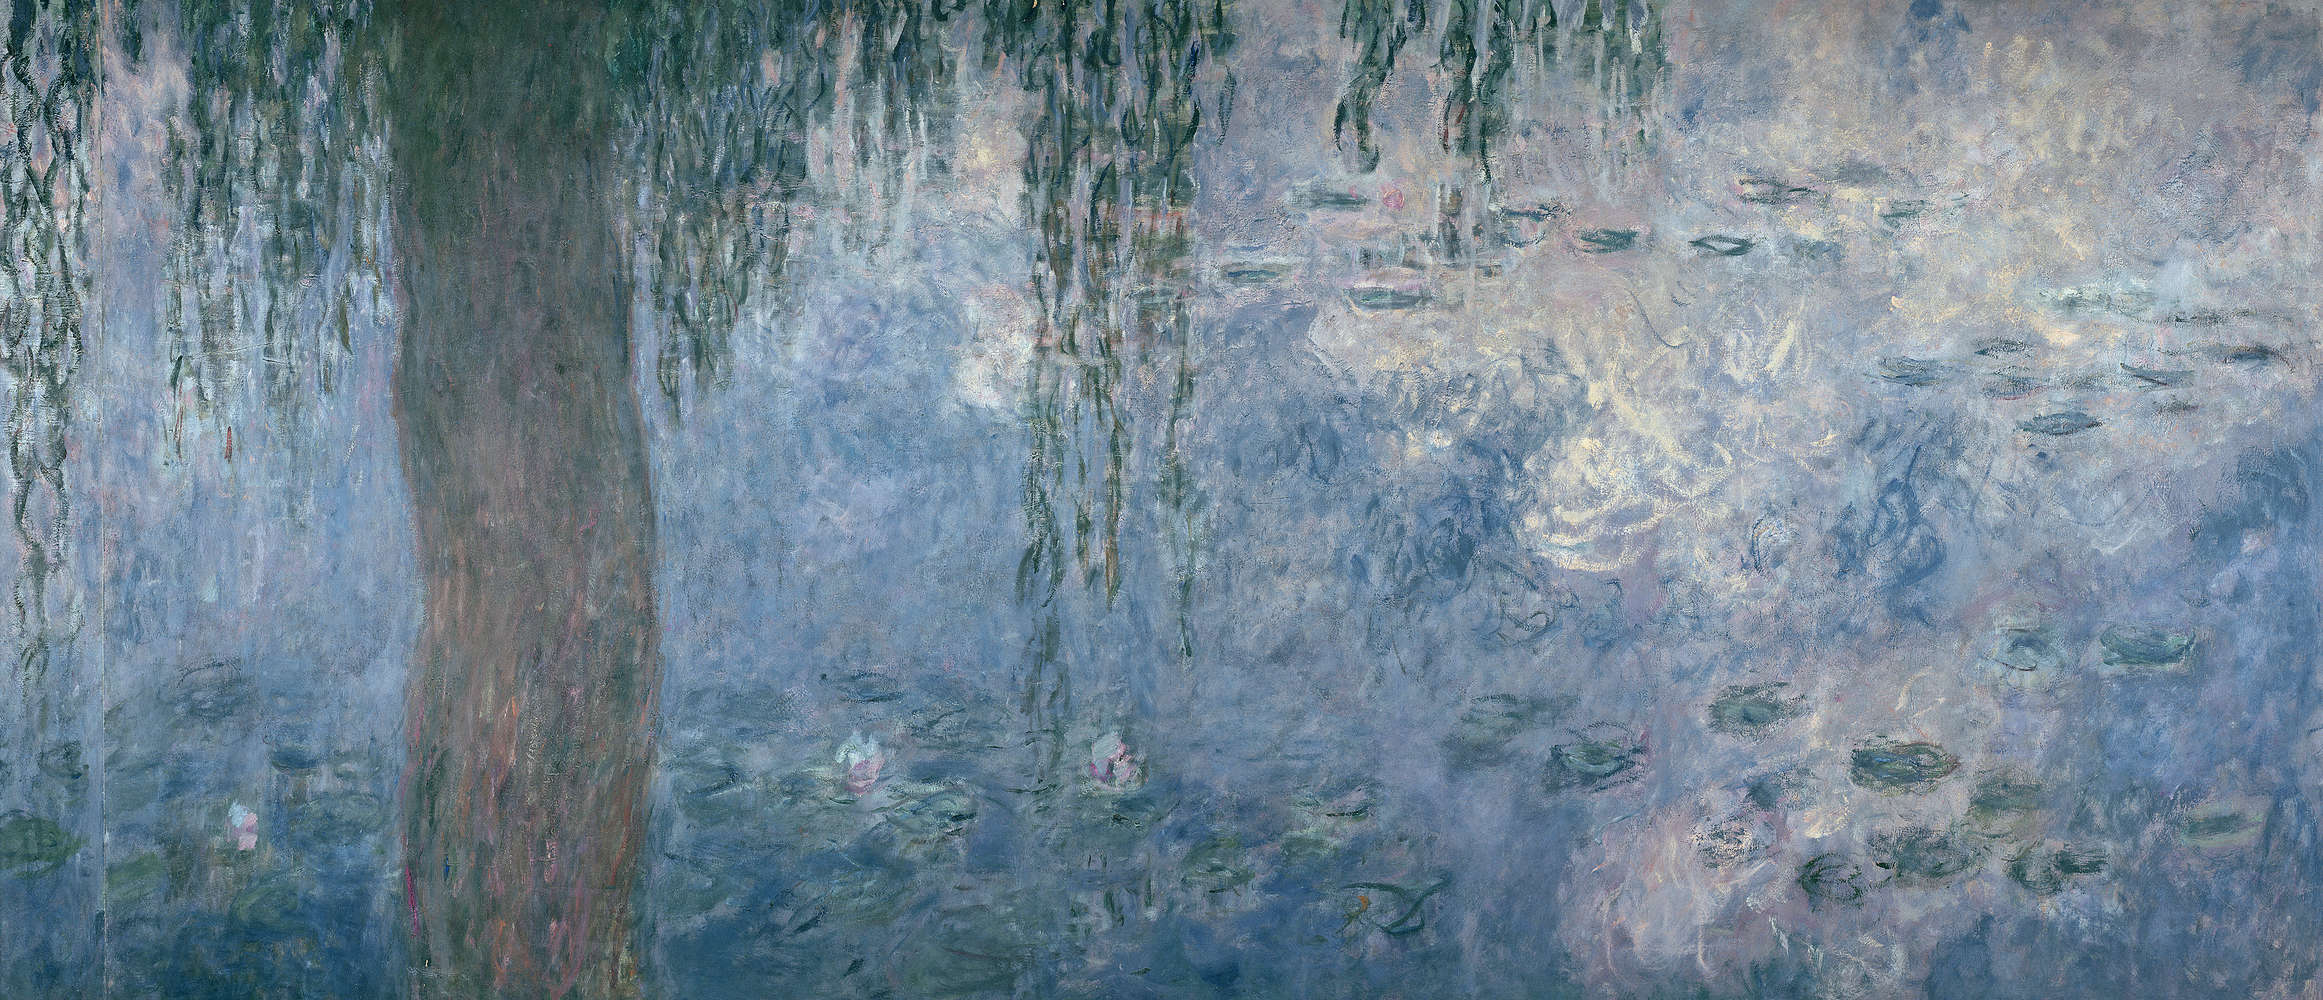             Mural "Nenúfares: Mañana con sauces llorones" de Claude Monet
        